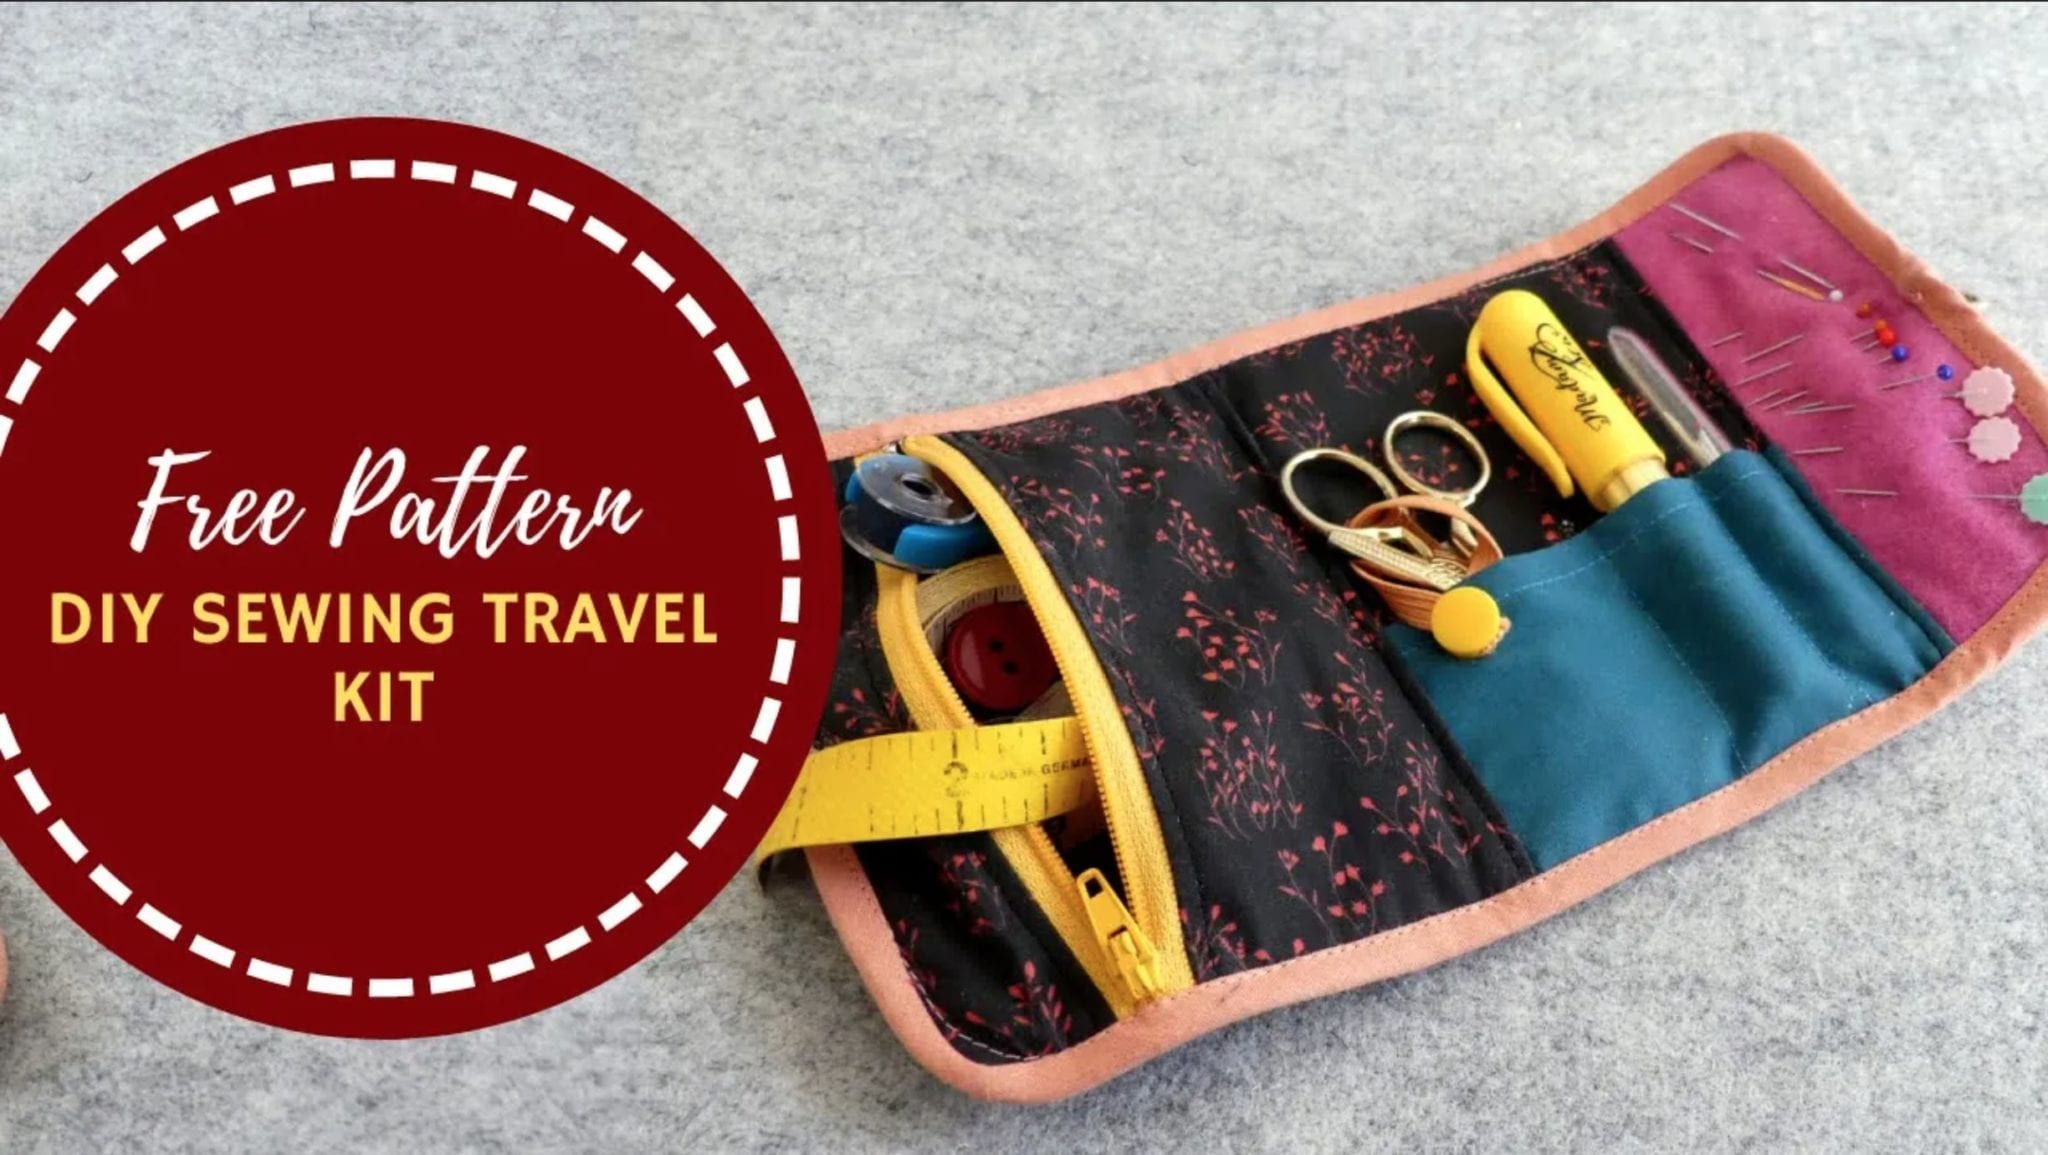 DIY Sewing Travel Kit FREE Sewing Pattern | Sewing 4 Free